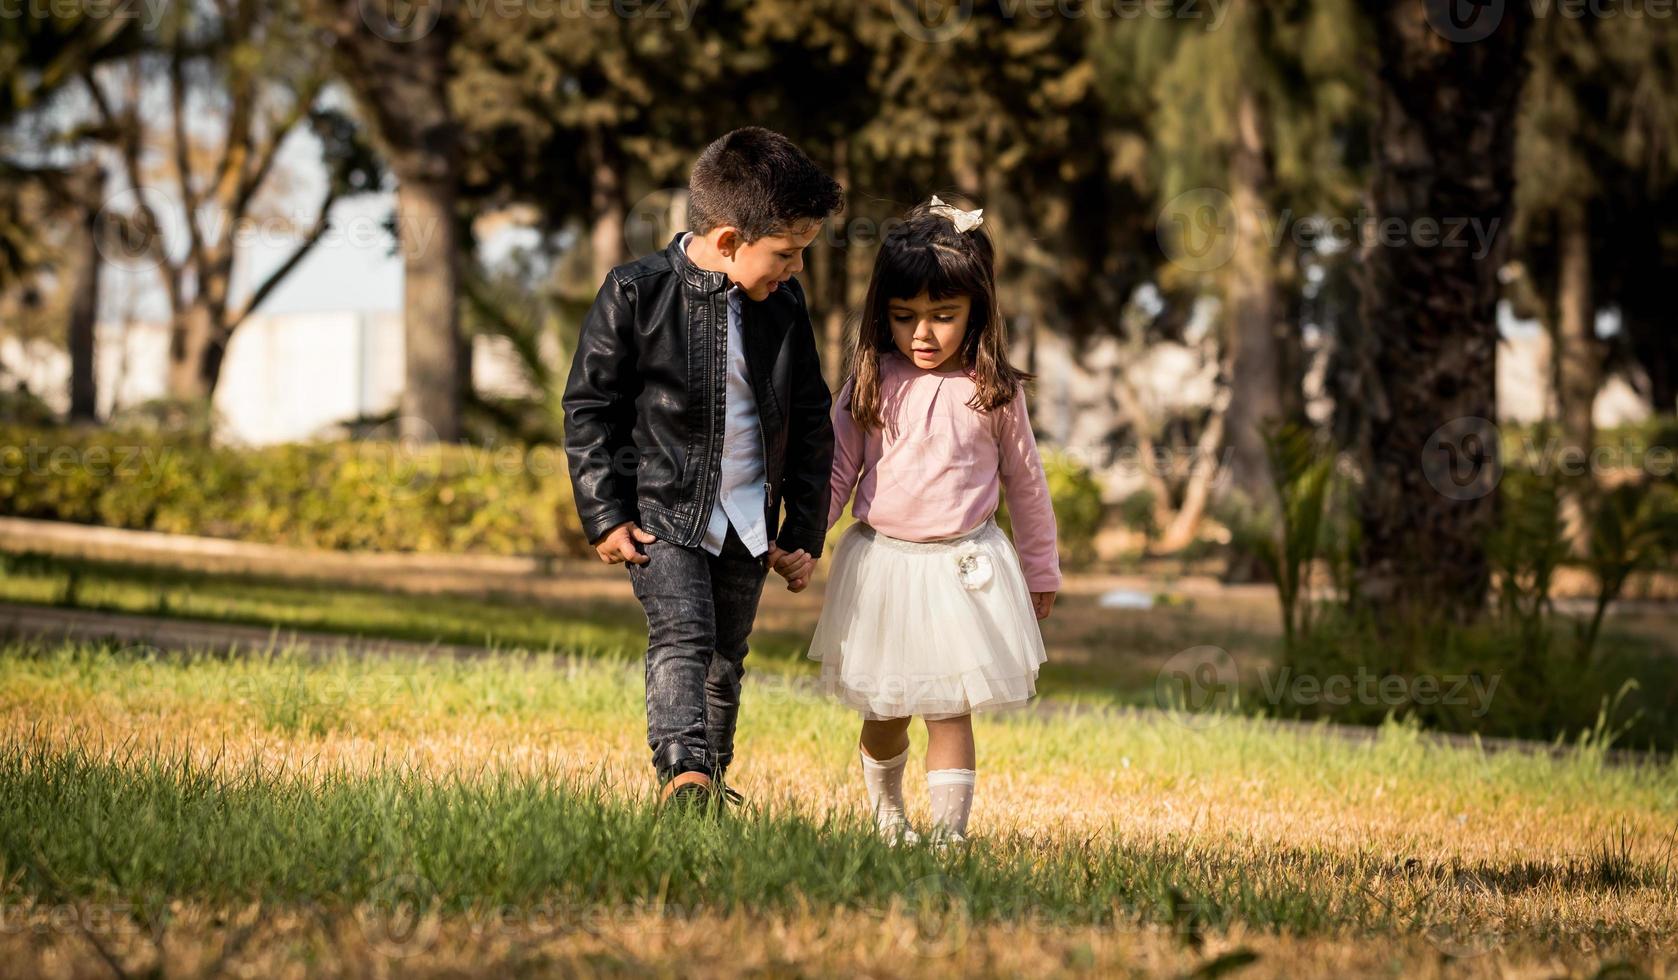 kleiner Junge und Mädchen spielen und gehen im Park in der Nähe des Waldes Händchen haltend foto